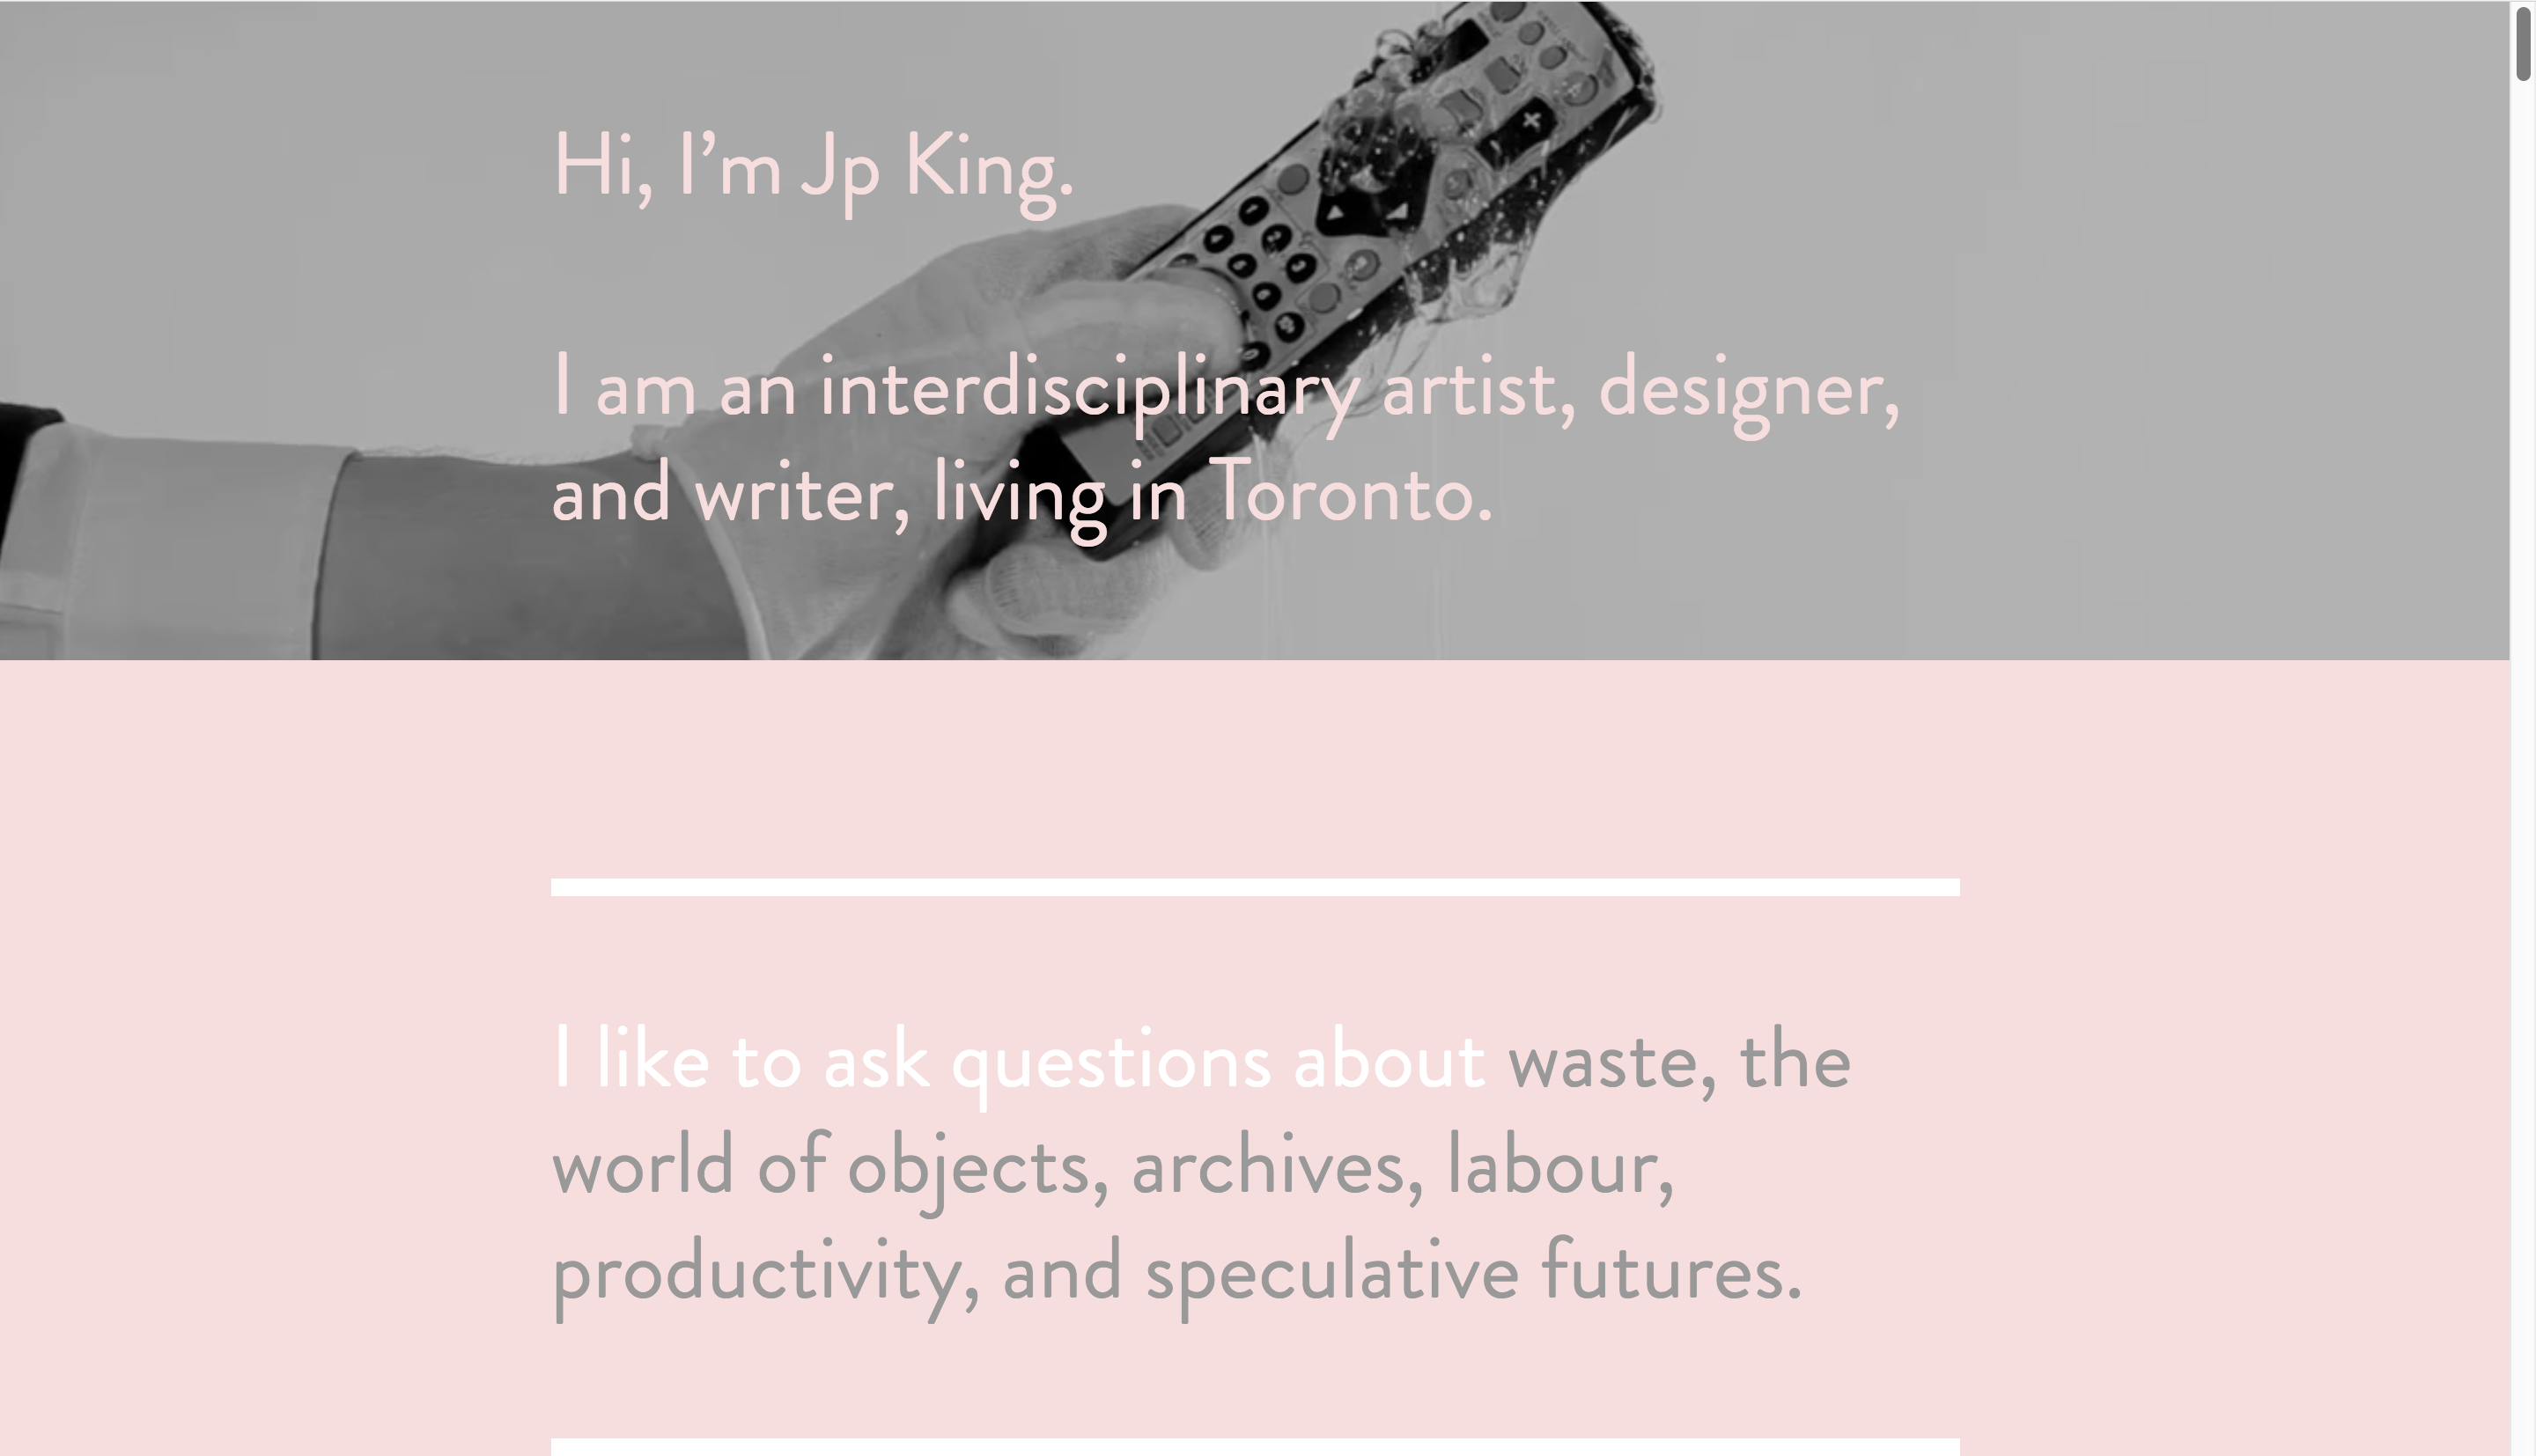 Jp King's webpage